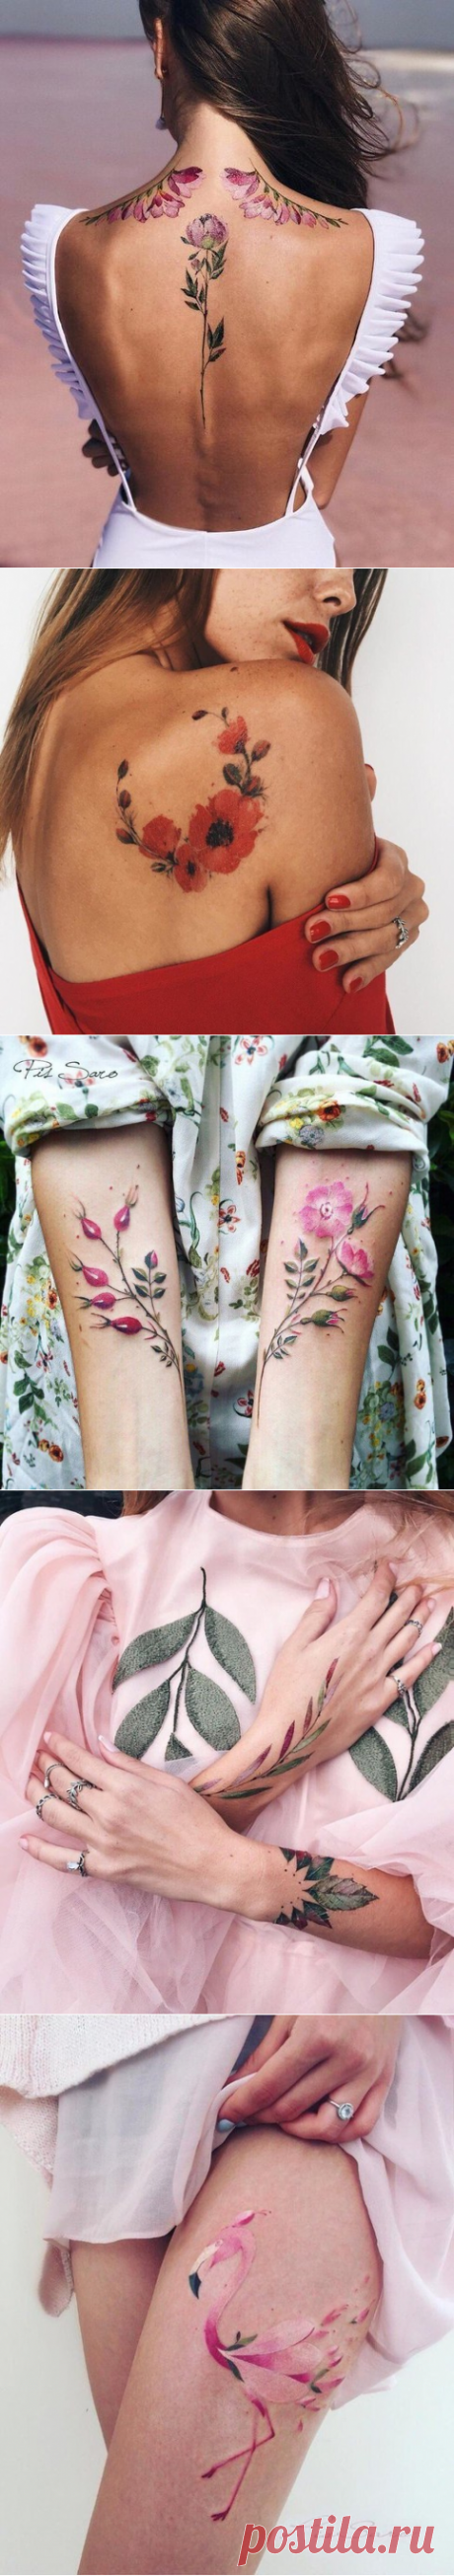 10 цветочных рисунков на женских телах, которые язык не поворачивается назвать татуировками